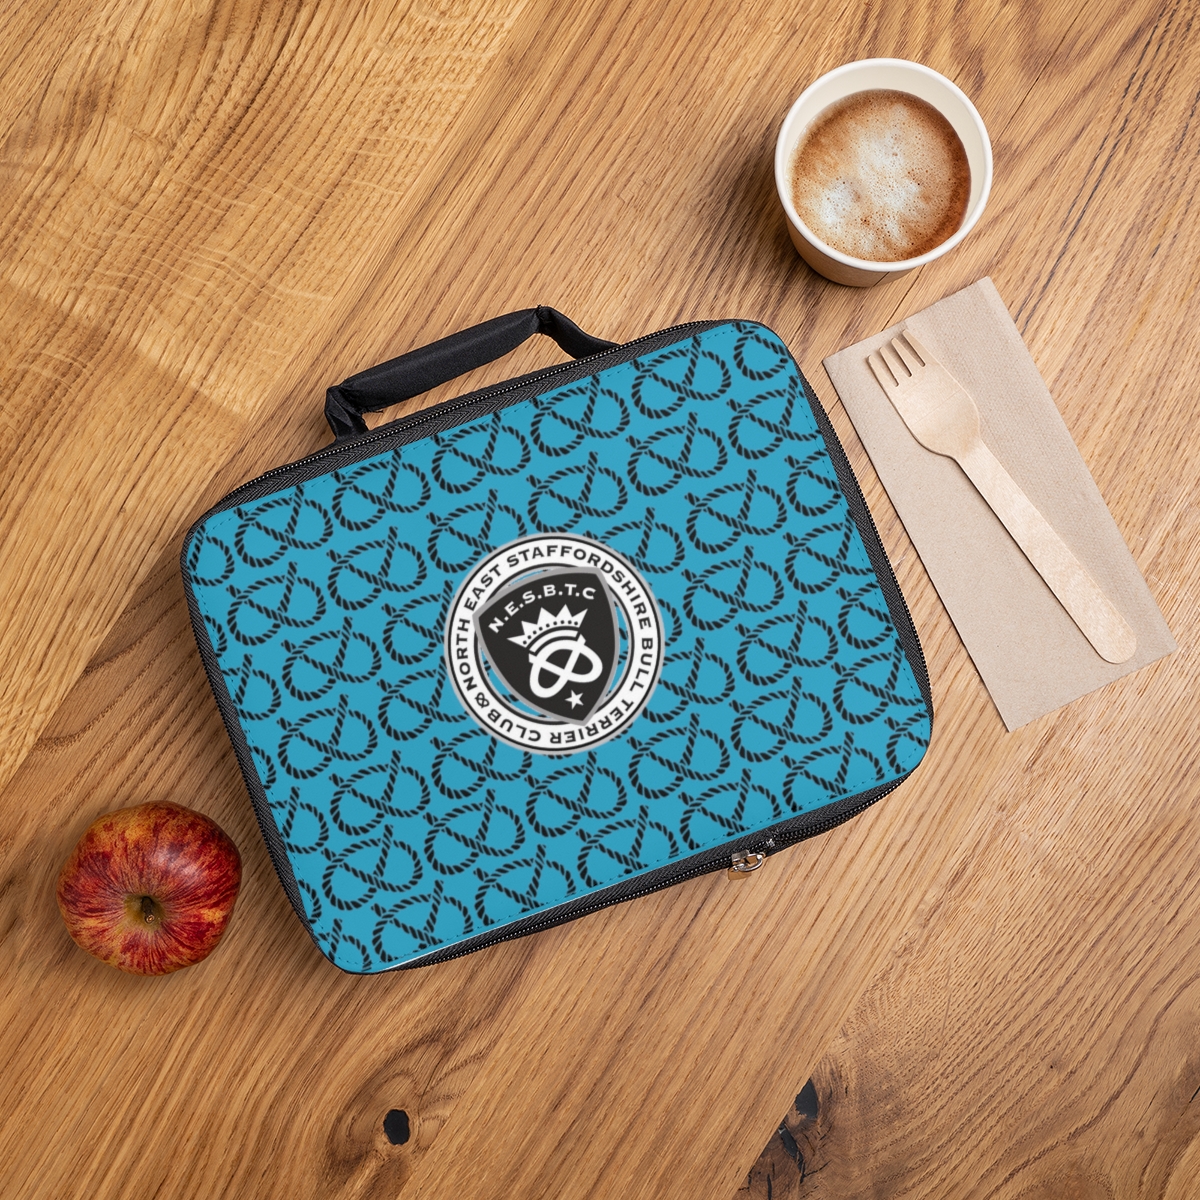 NESBTC Logo & Knot Turquoise Lunch Bag